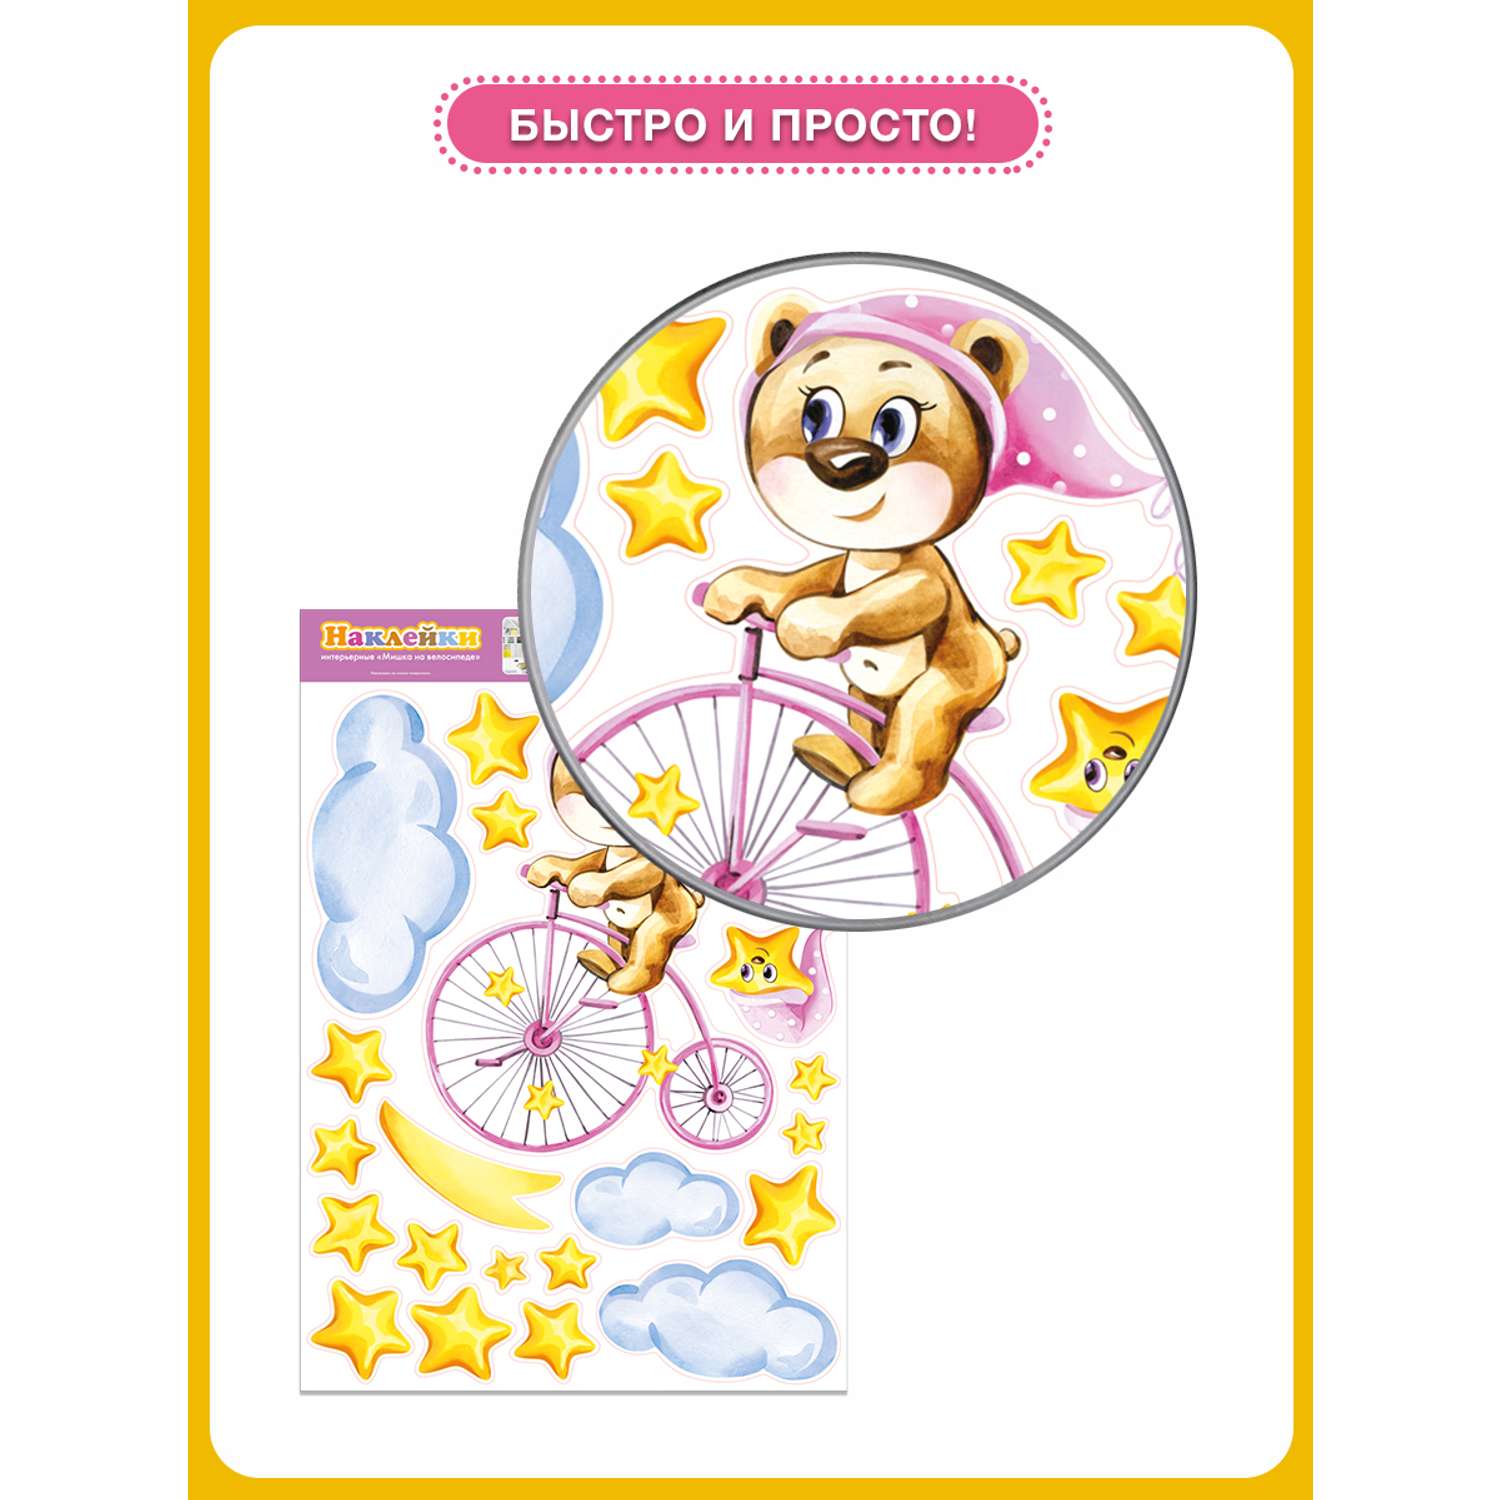 Наклейка оформительская ГК Горчаков в детскую комнату дочке с рисунком мишка для декора - фото 4